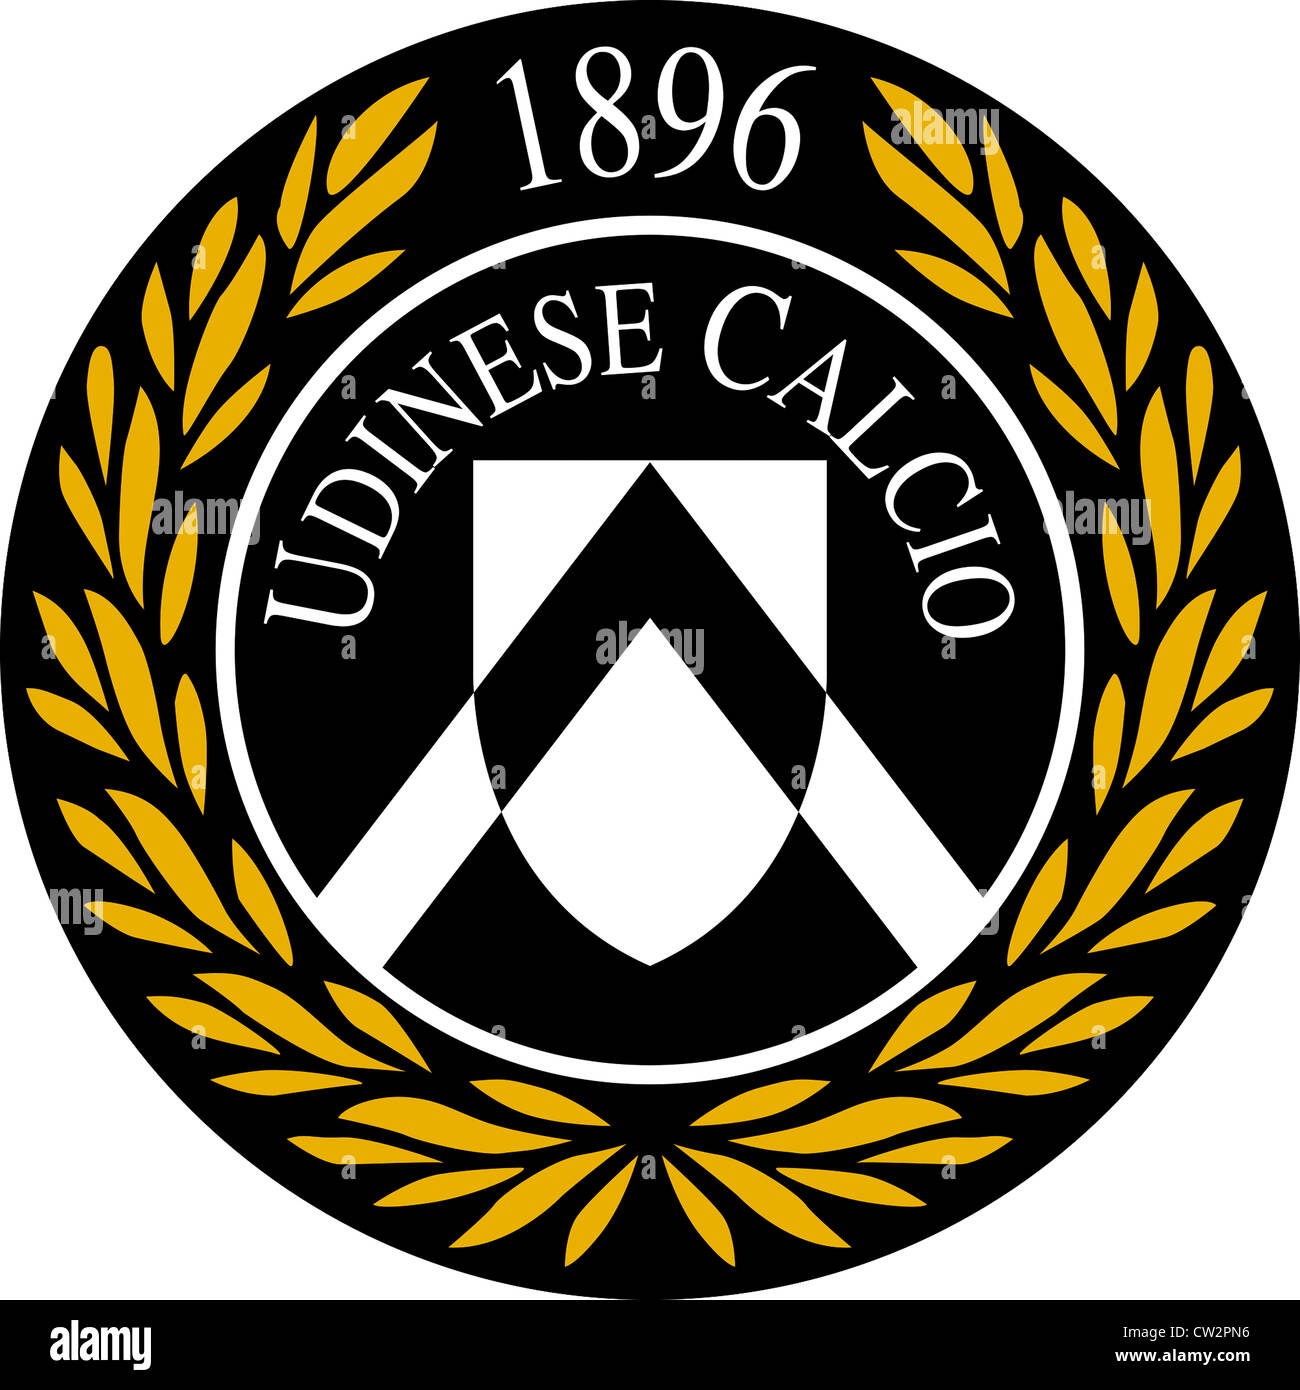 El logotipo del de fútbol italiano Udinese Calcio de stock - Alamy